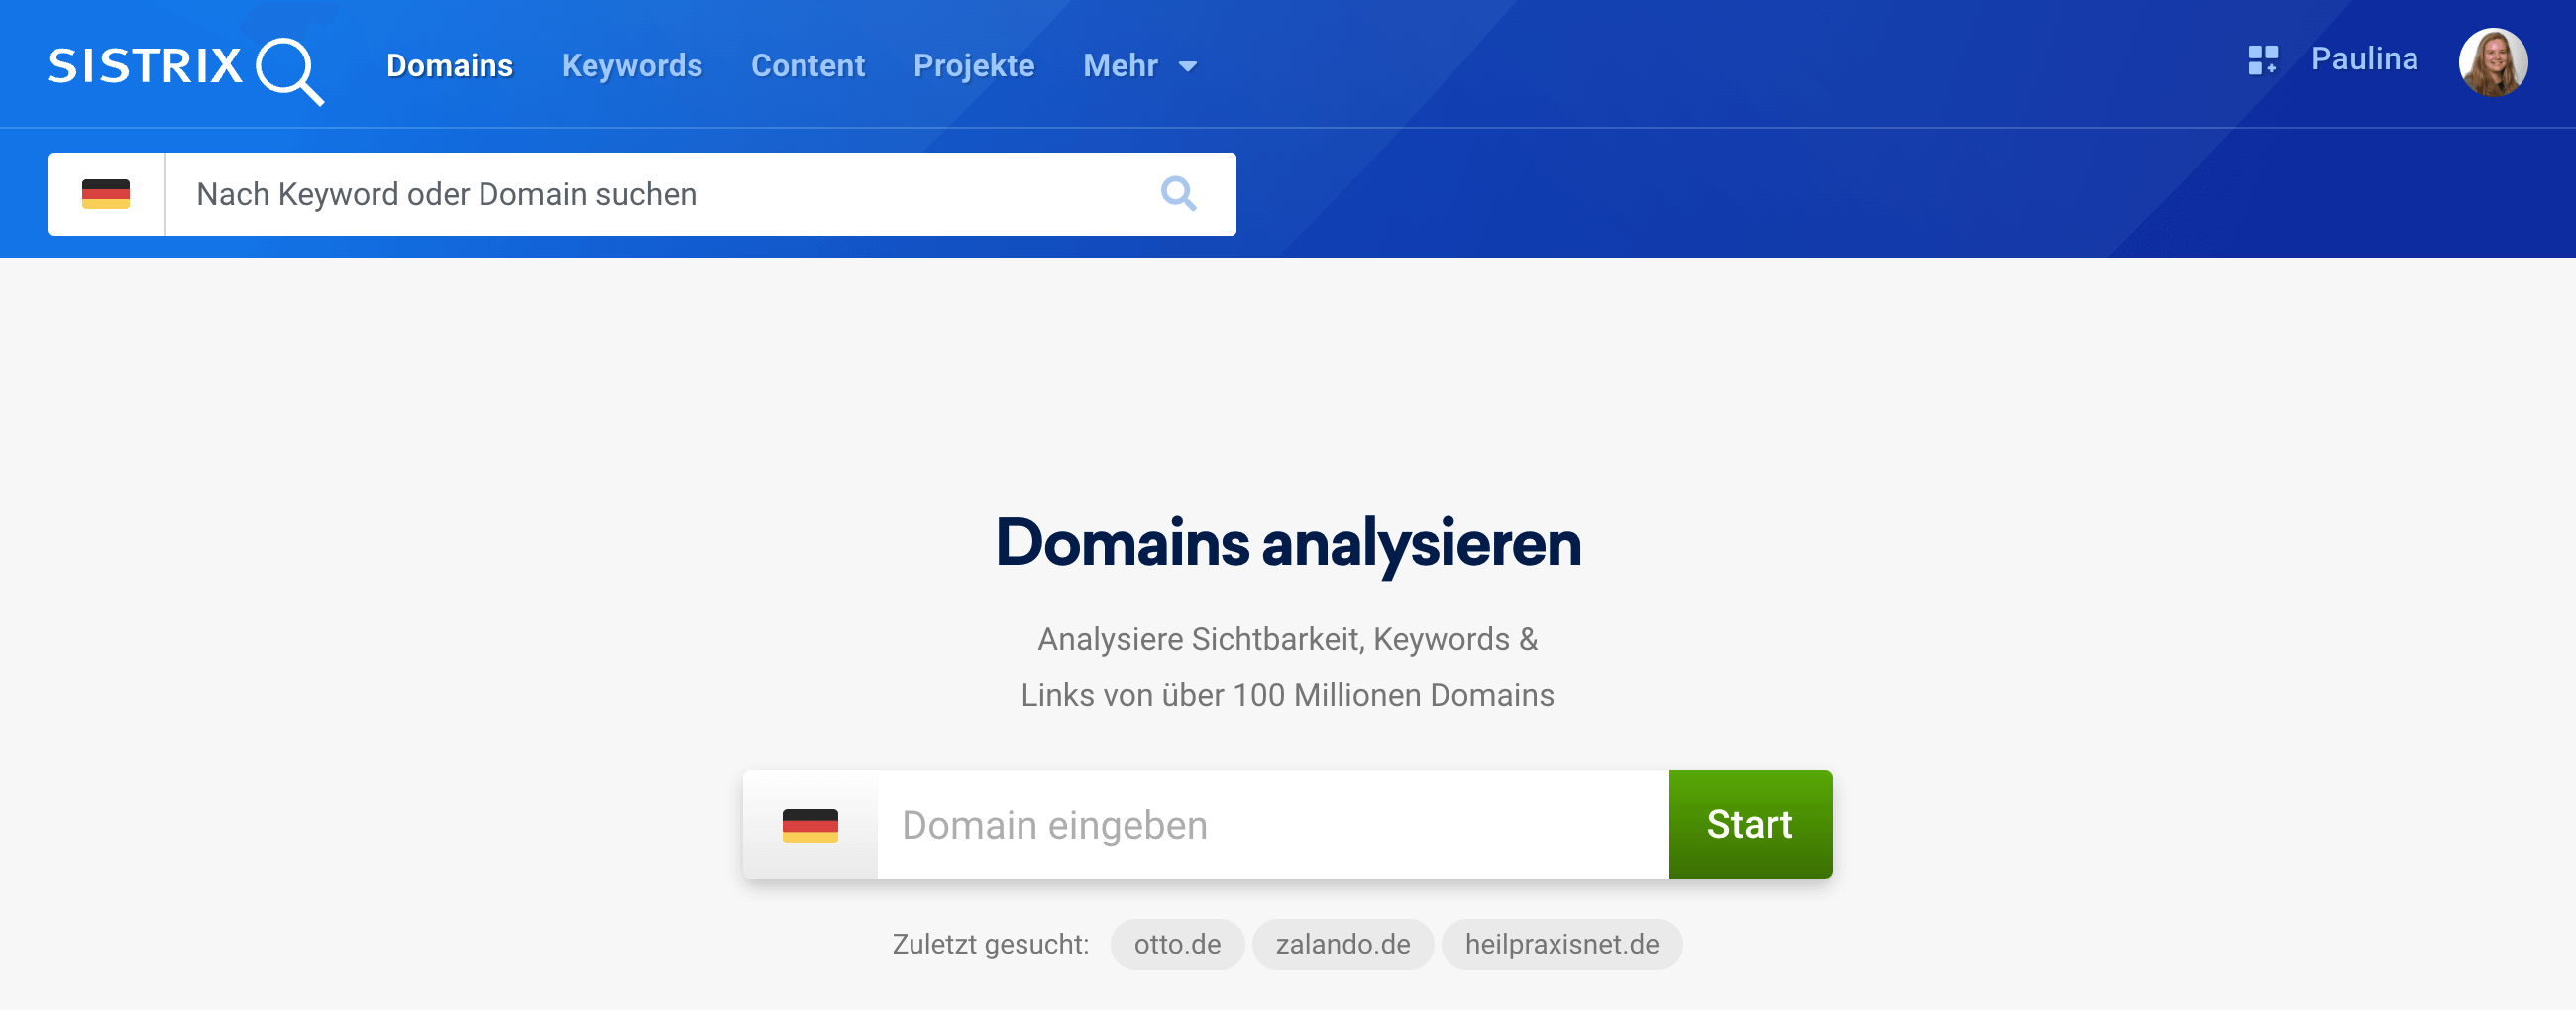 Die Startseite des Menüpunkts Domains in der SISTRIX Toolbox.